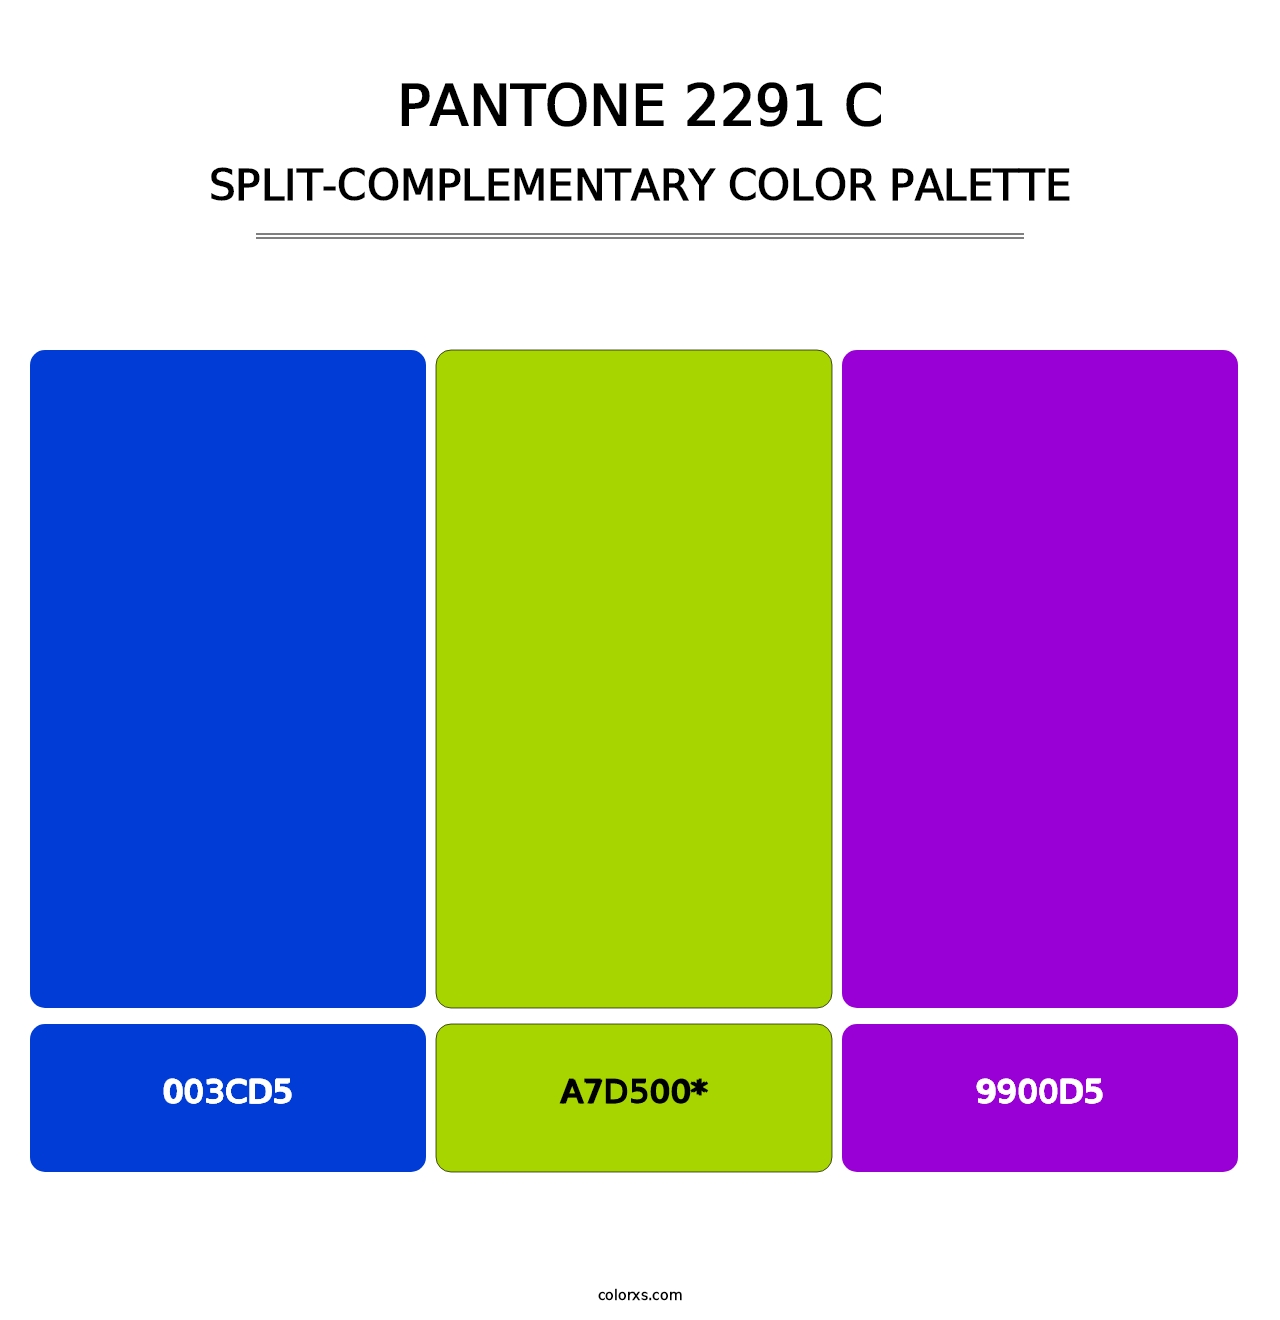 PANTONE 2291 C - Split-Complementary Color Palette